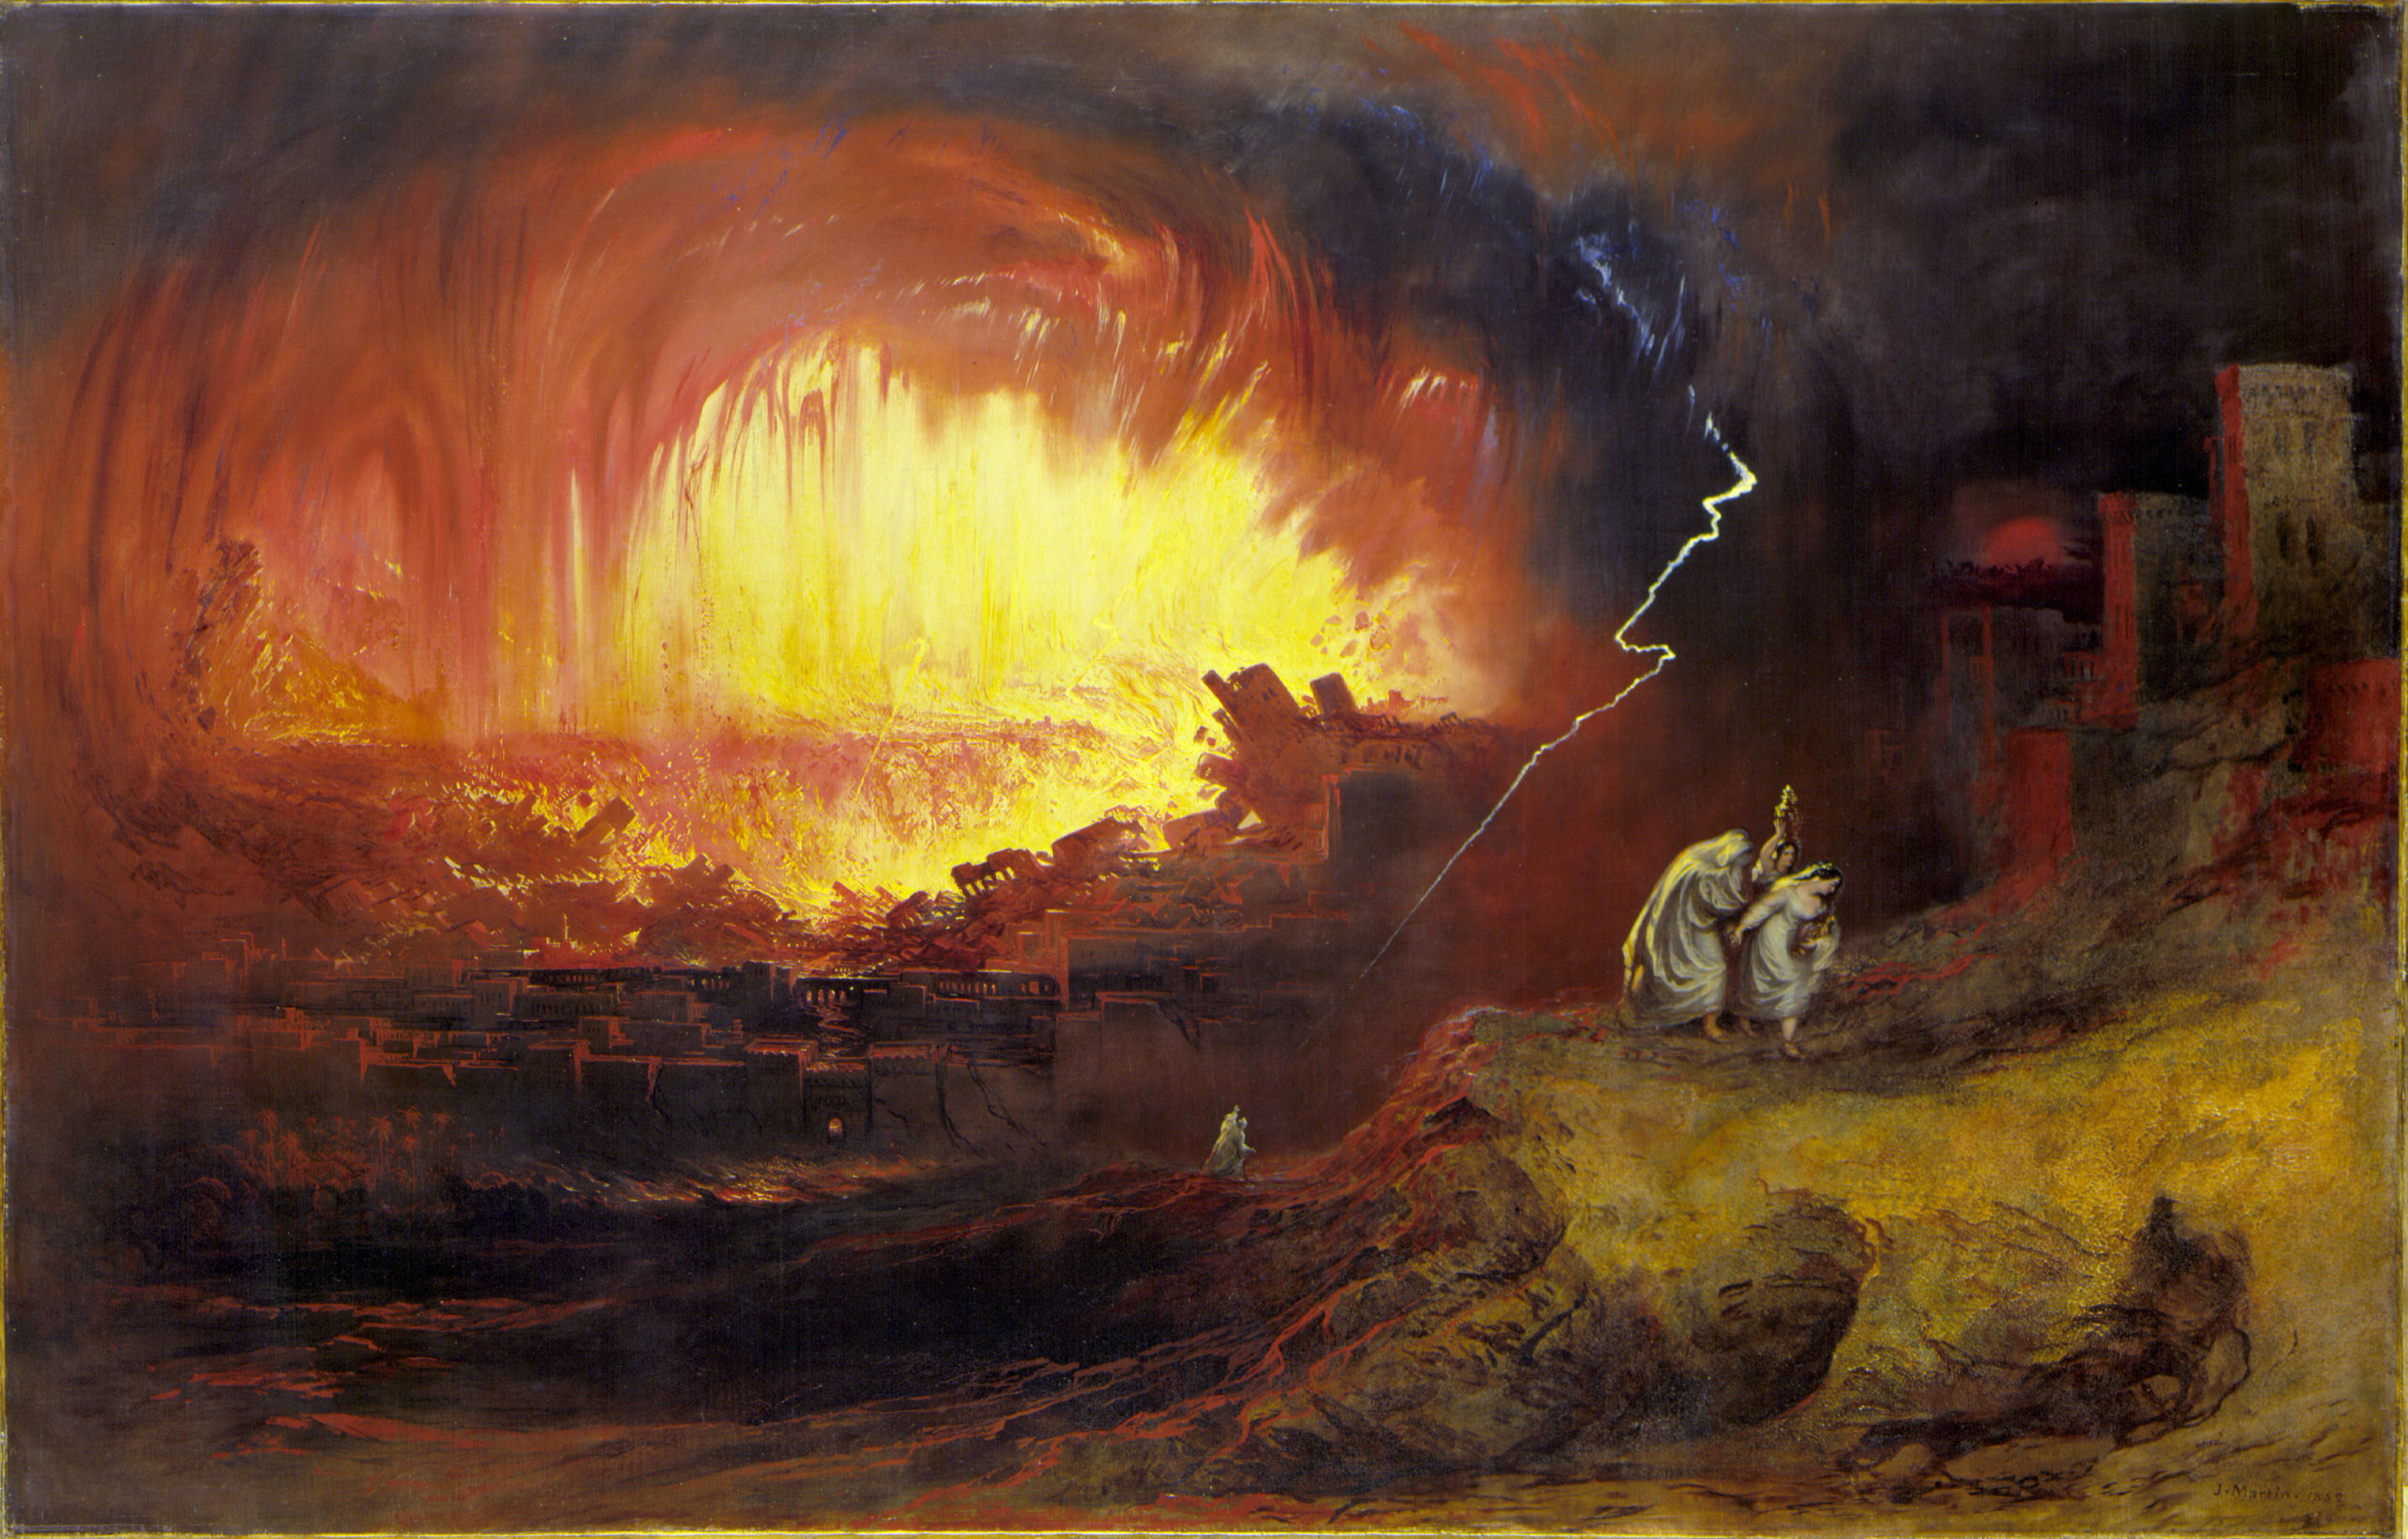 Zniszczenie Sodomy i Gomory by John Martin - 1852 - 136.3 x 212.3 cm 